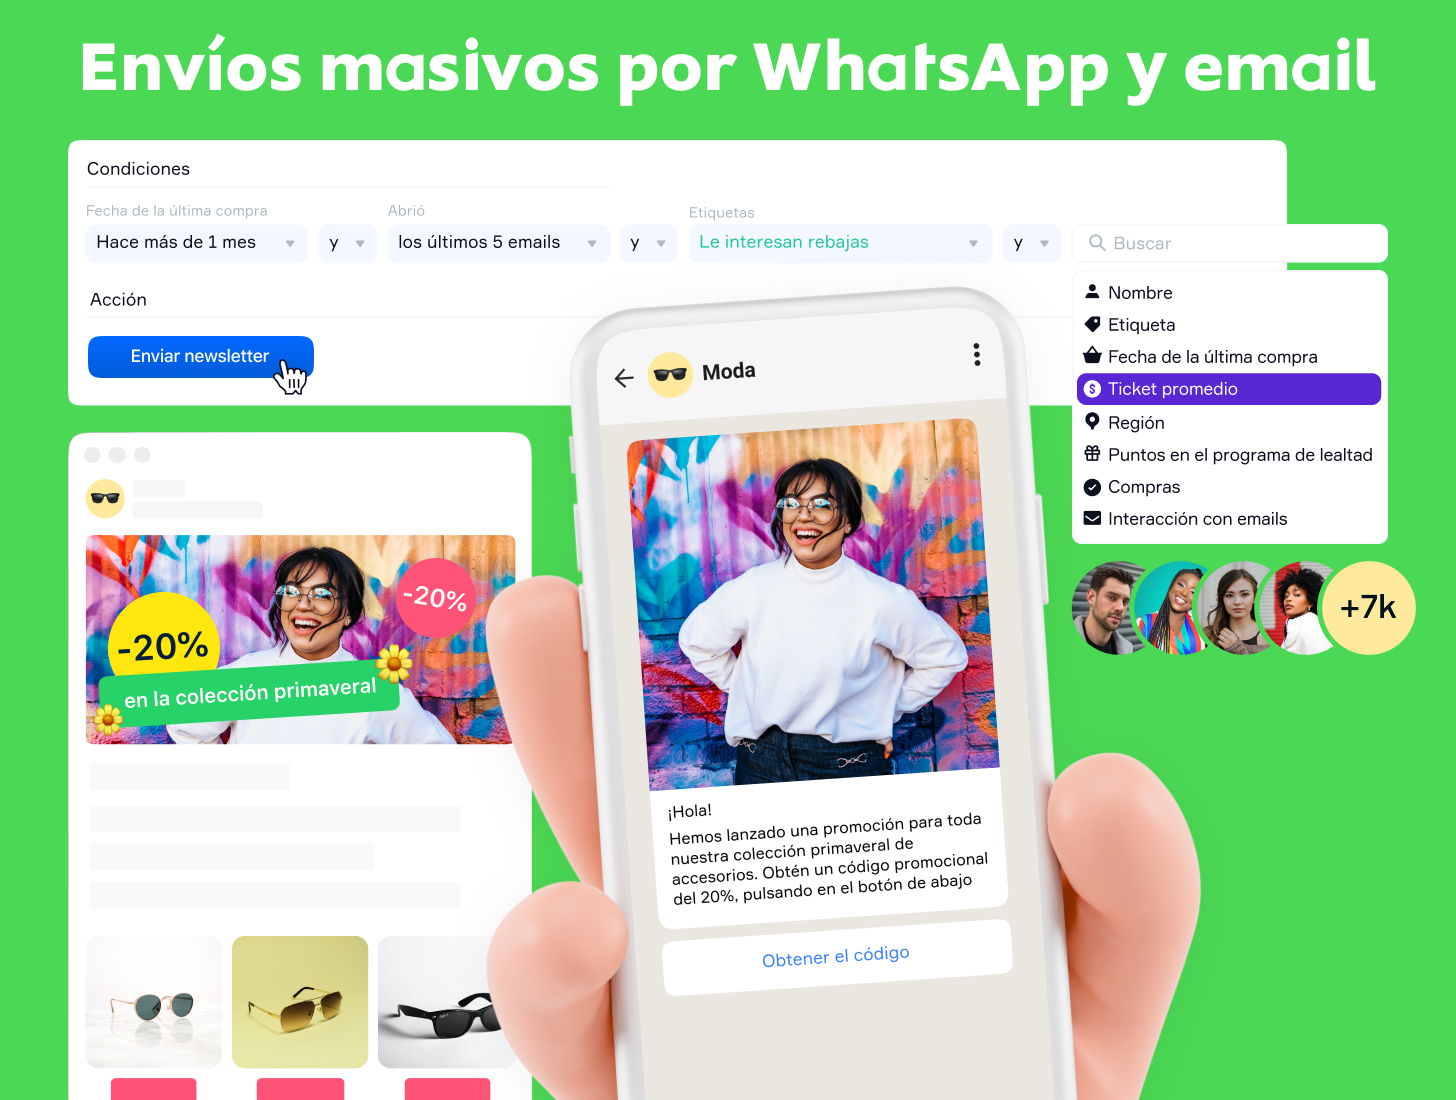 Envíos masivos por WhatsApp y email